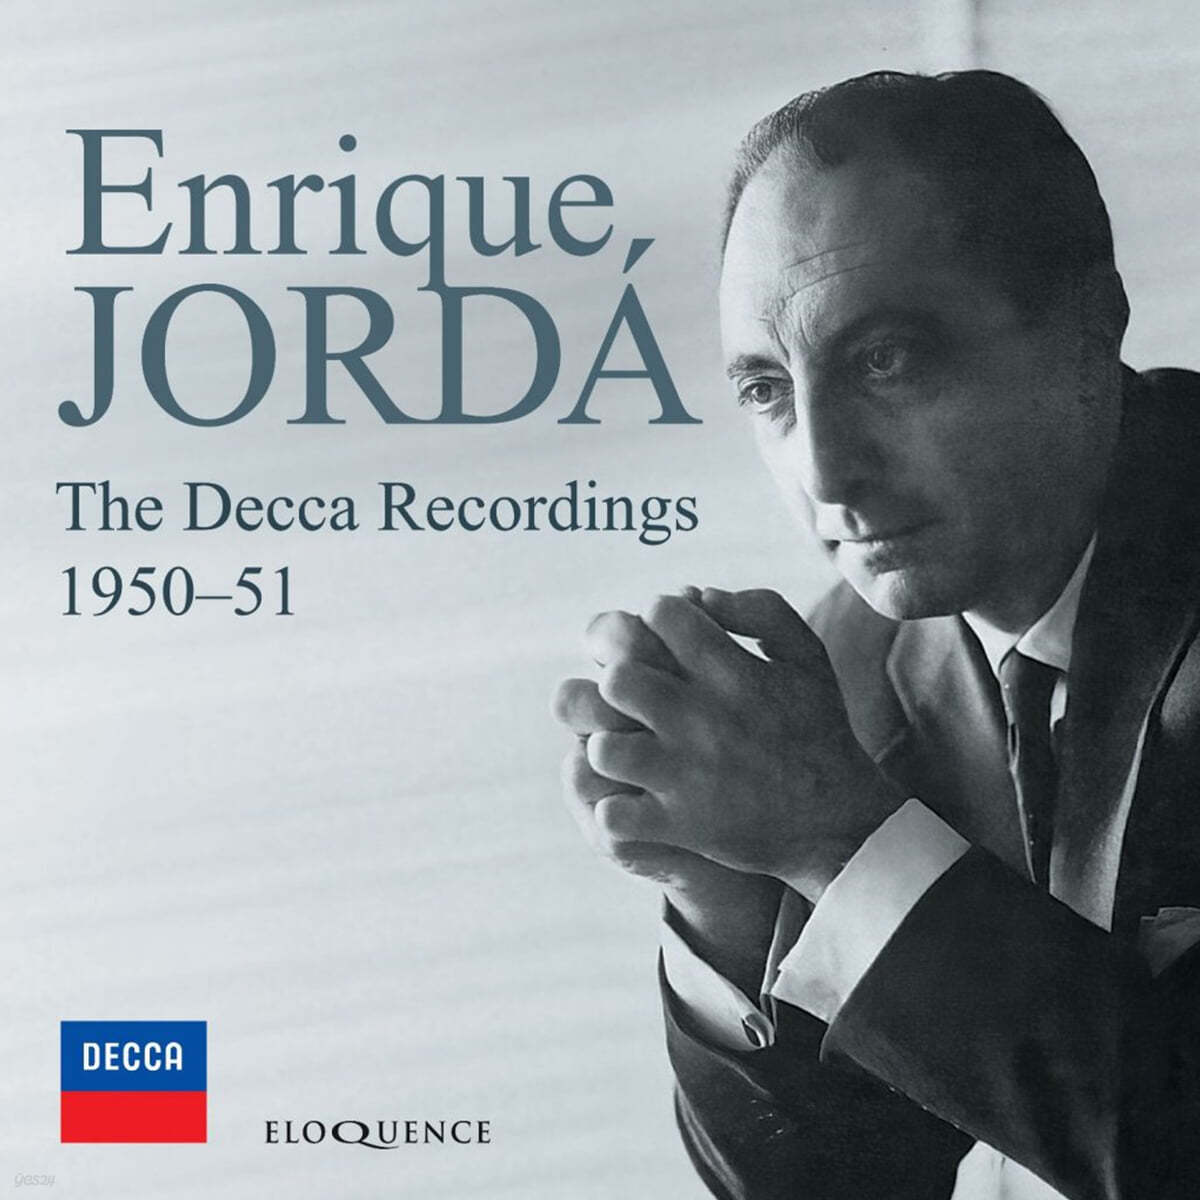 Enrique Jorda 엔리케 호르다 - 데카 레코딩 (The Decca Recordings 1950-1951) 